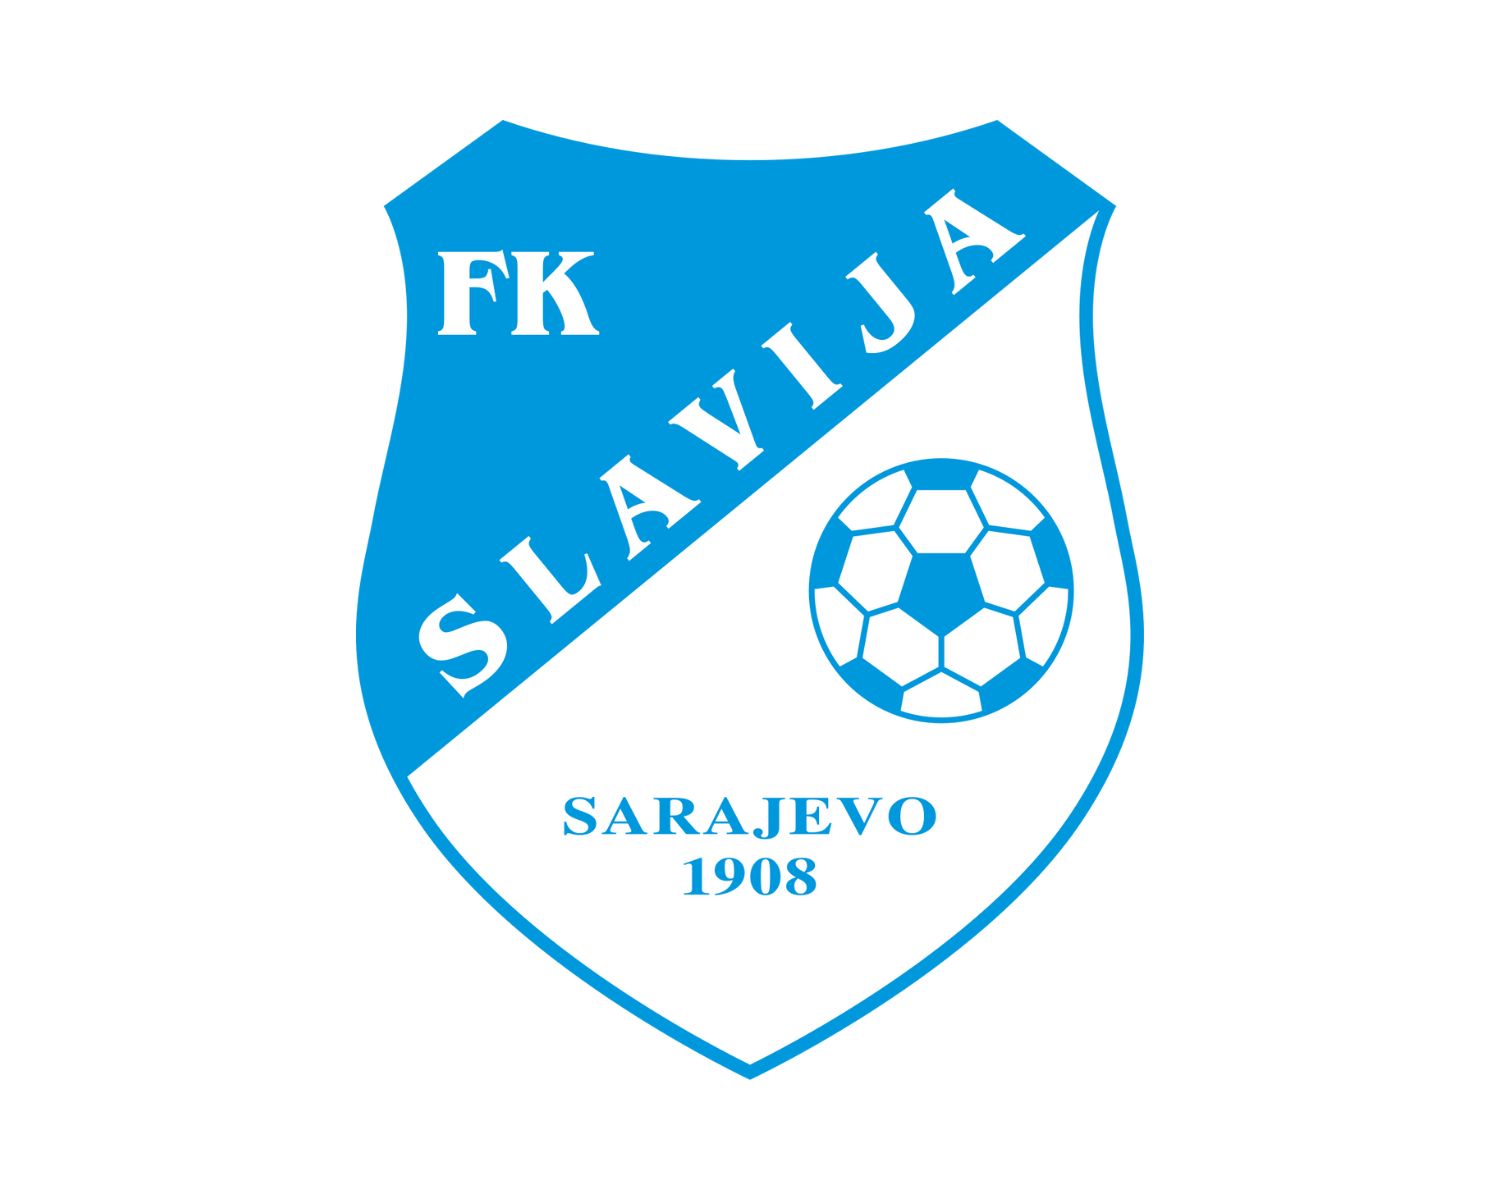 KF Tirana–Partizani Tirana rivalry - Wikipedia